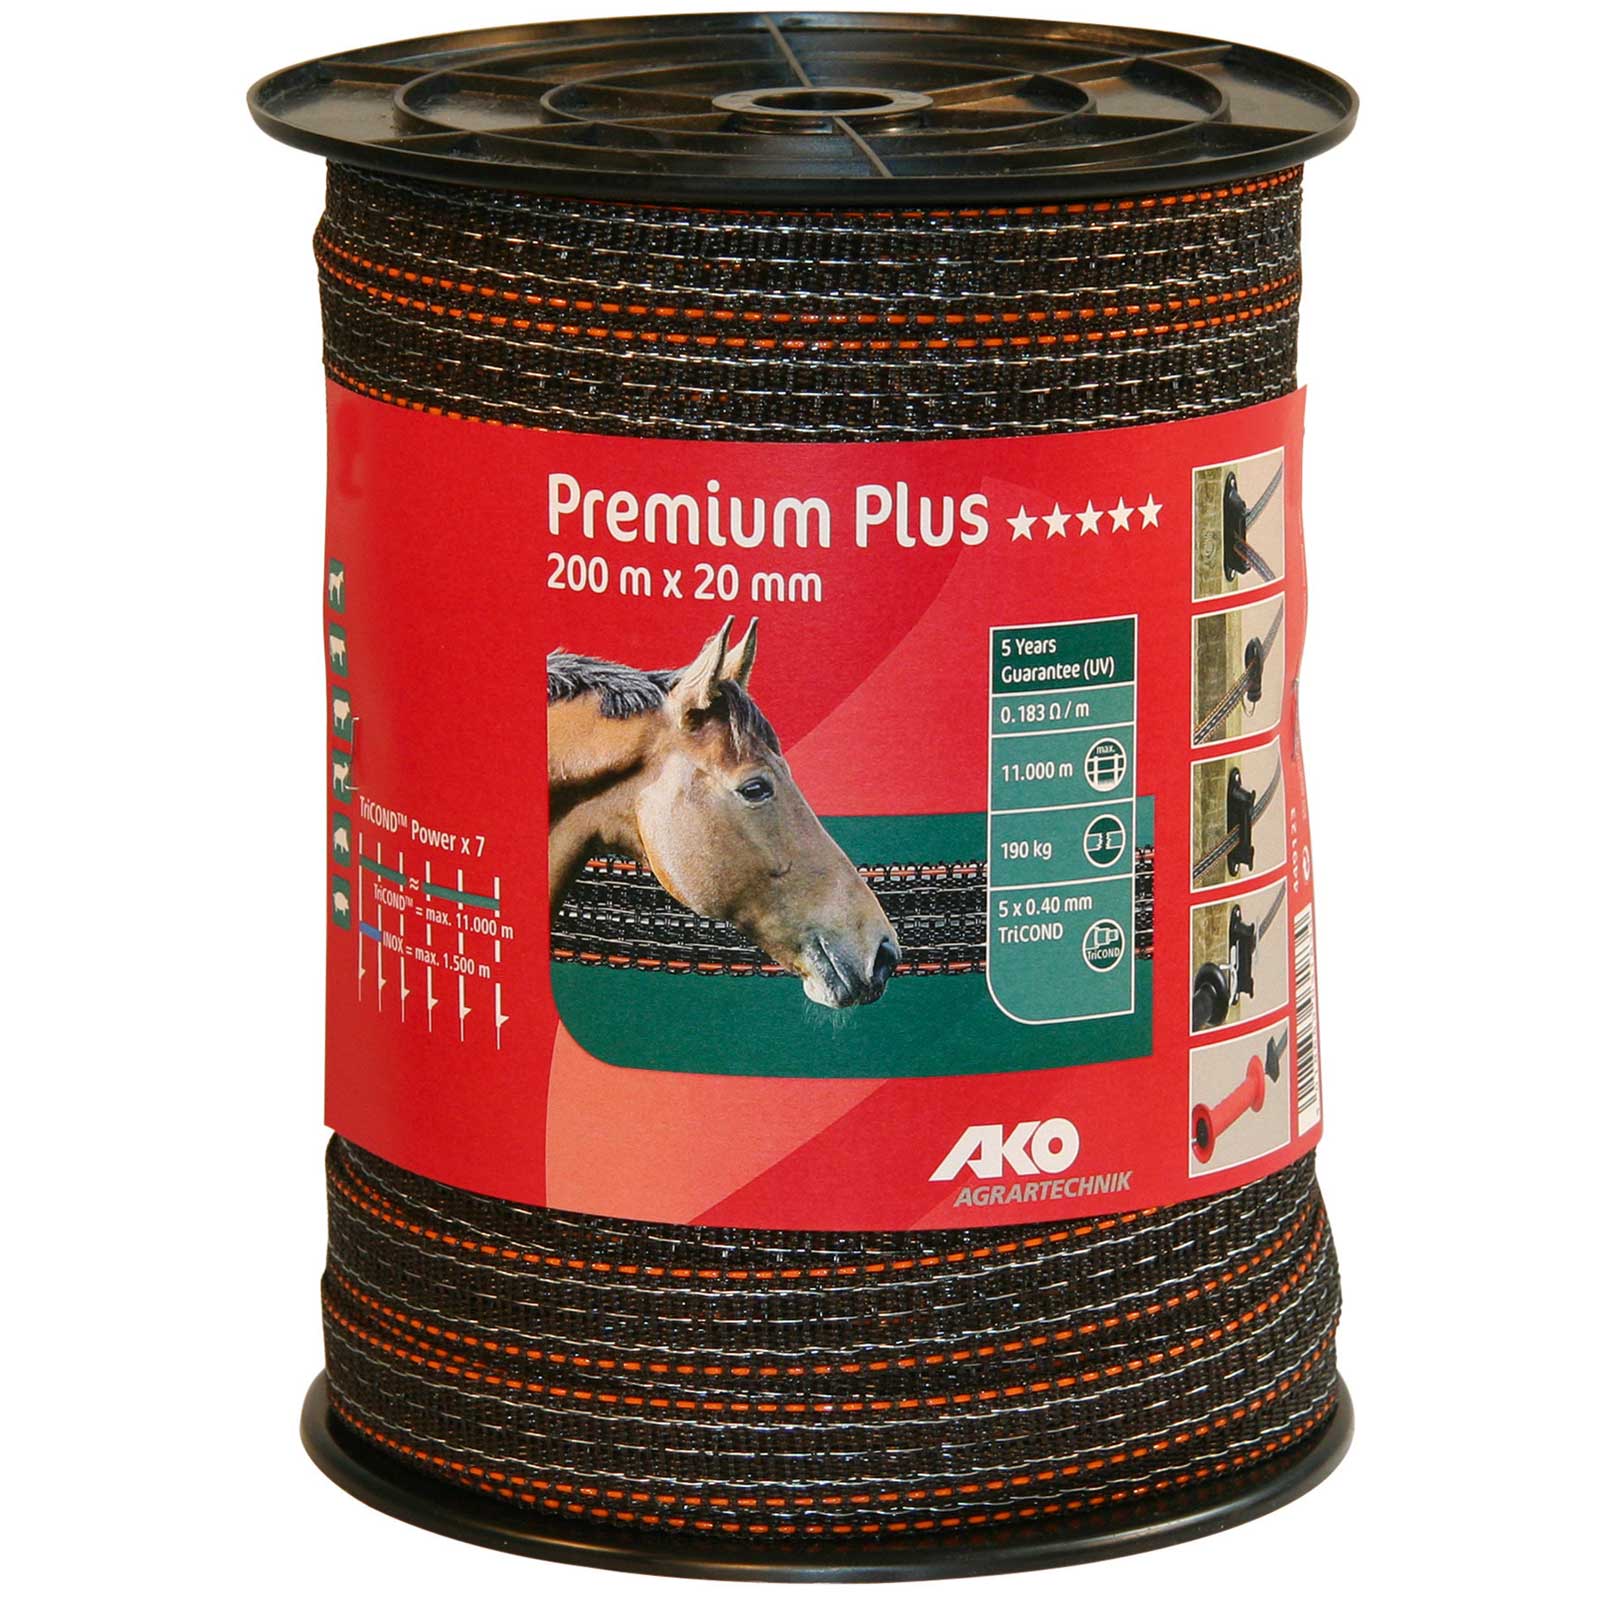 Ako Pasture Fence Tape Premium Plus 200m, 0.40 TriCOND, brown-orange